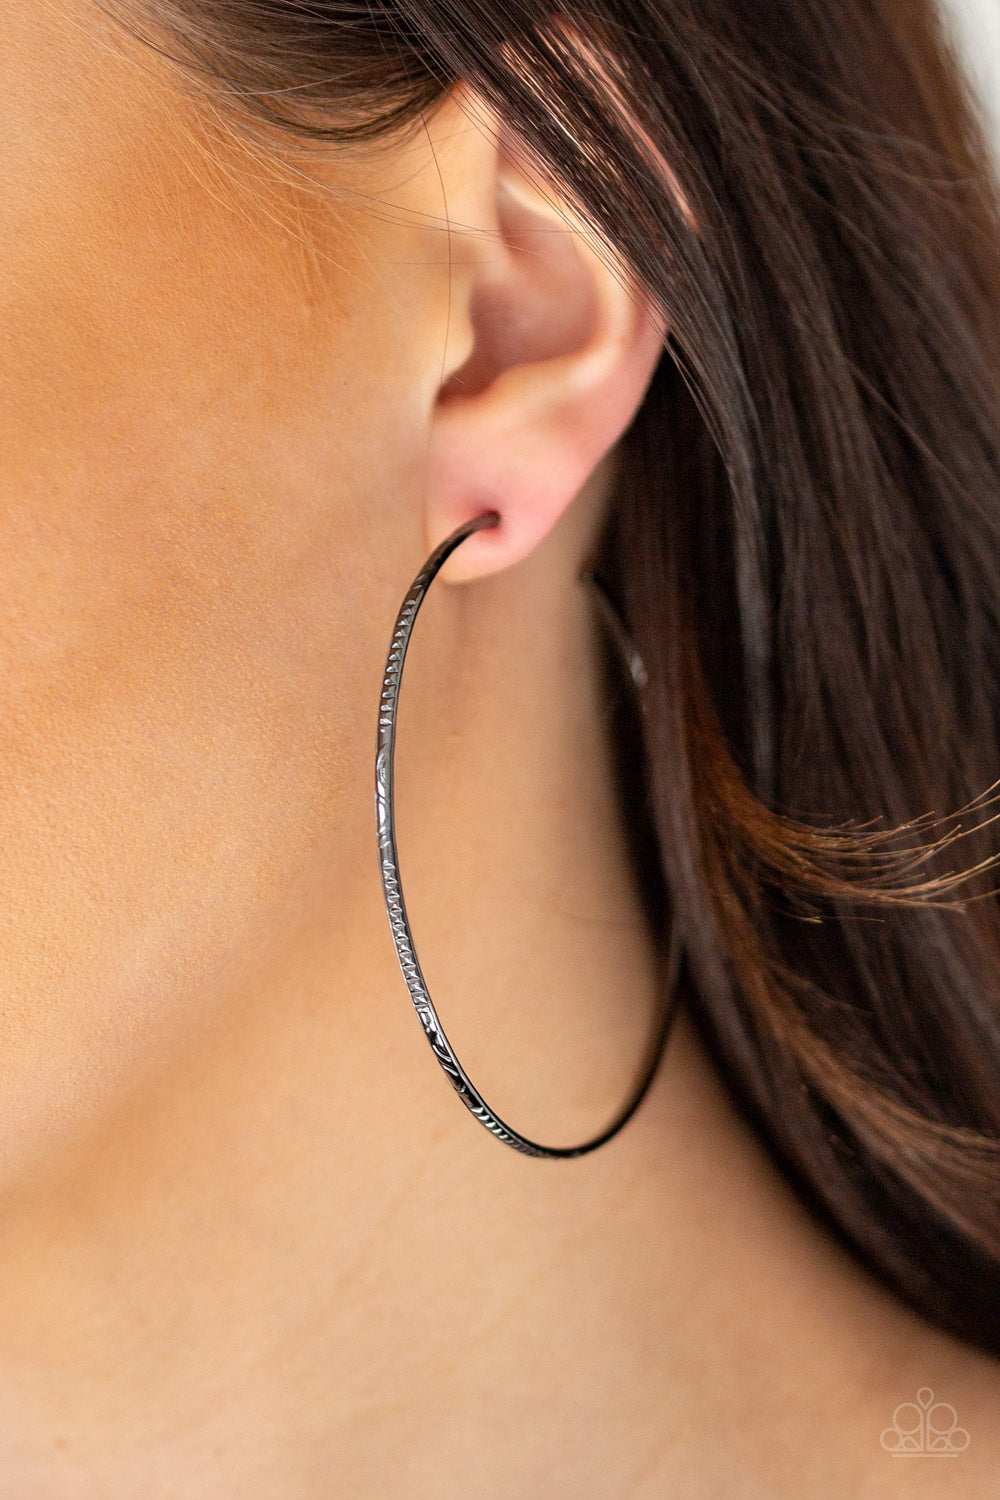 PAIR Hypoallergenic Surgical Steel Black Small Huggie Hoops Earrings Women  Men | eBay